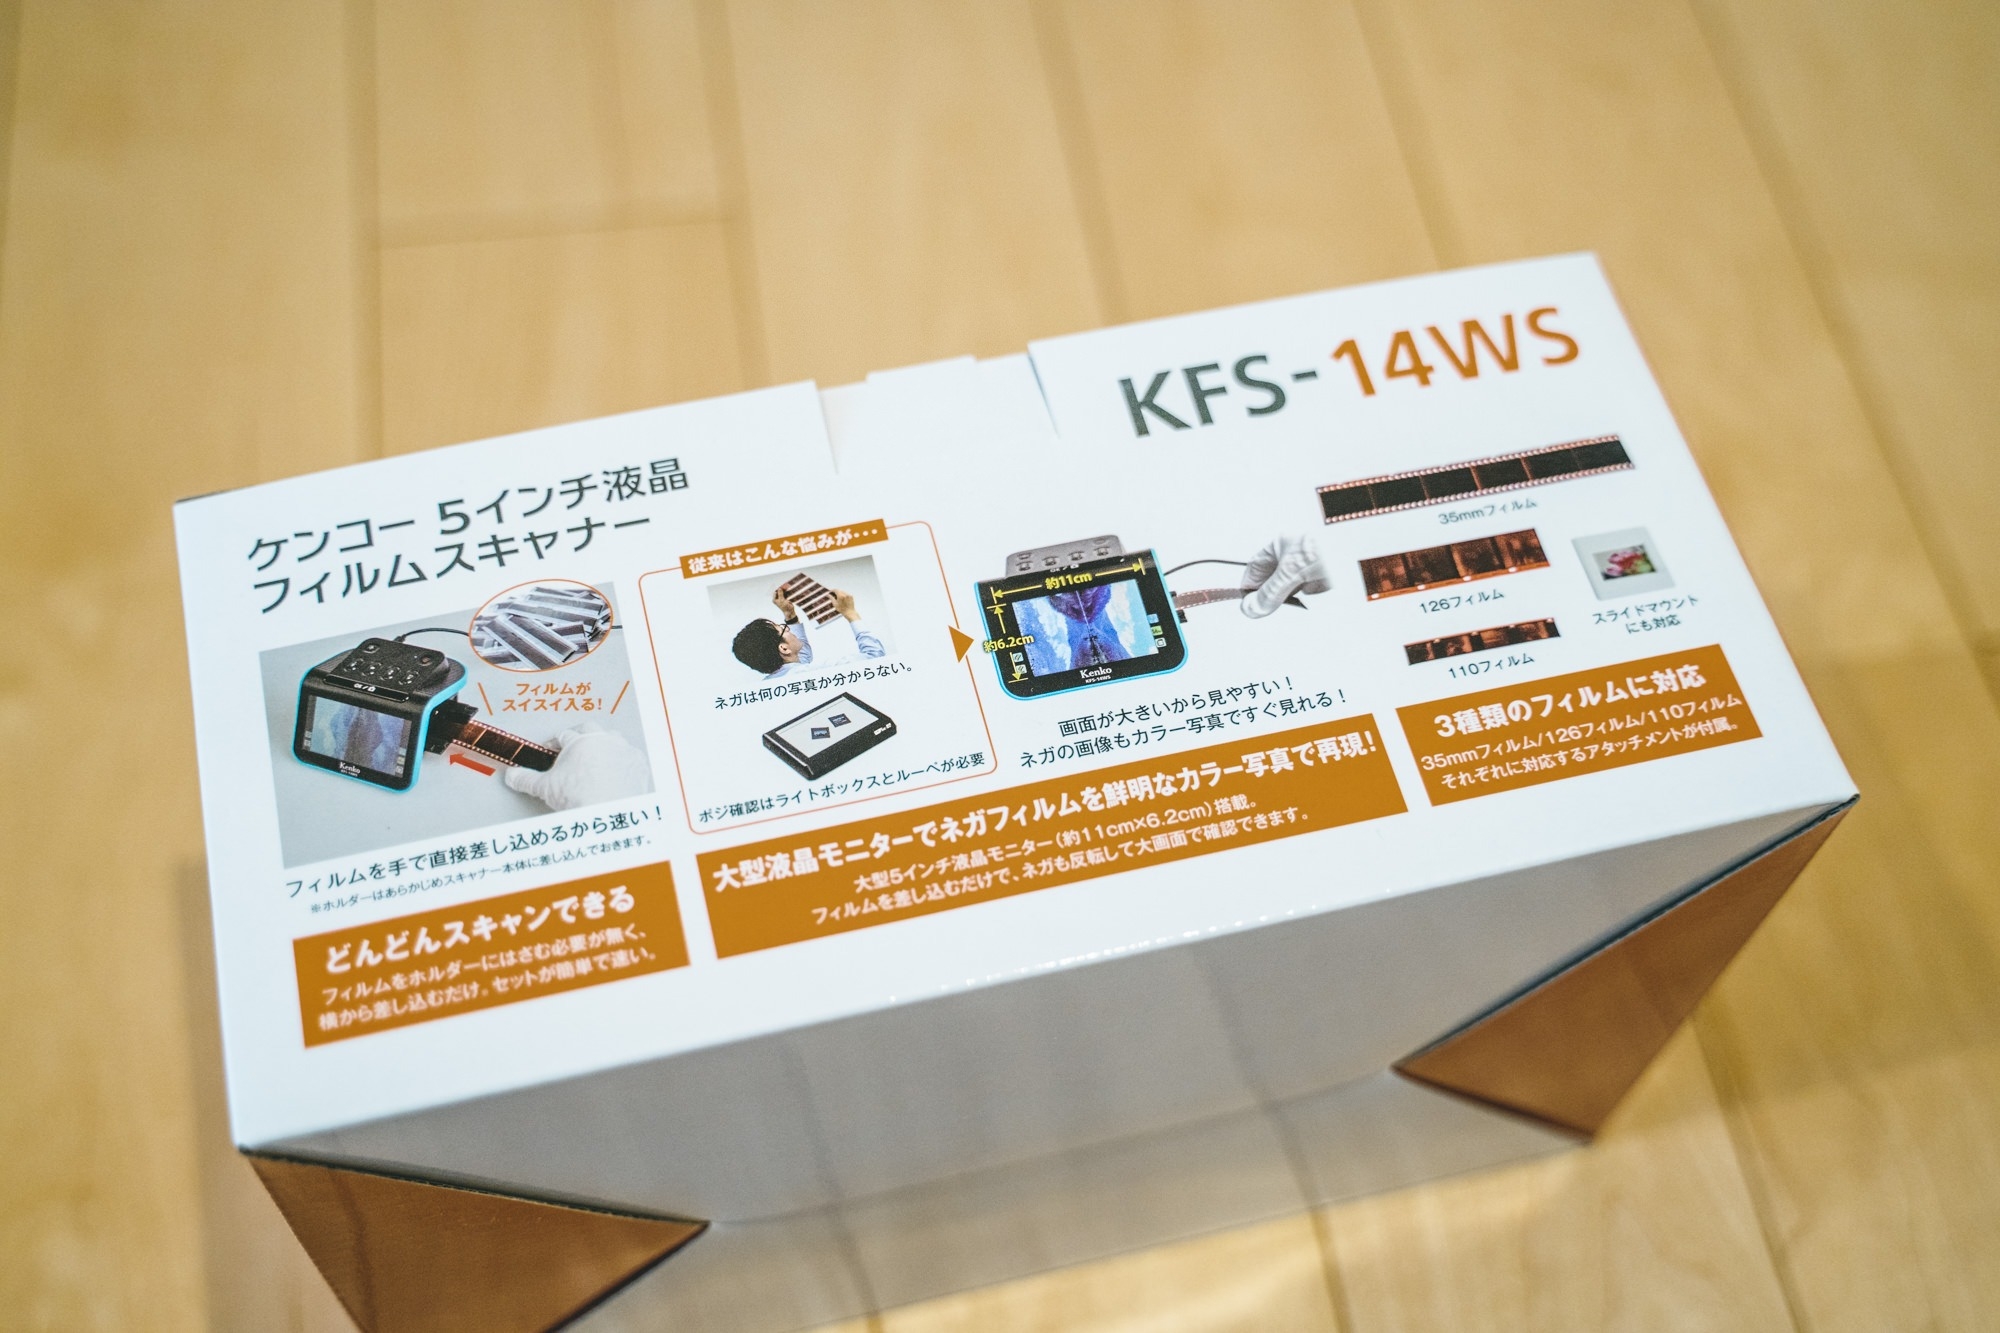 2021新作モデル ええもんやケンコー 5インチ液晶フィルムスキャナー KFS-14WS